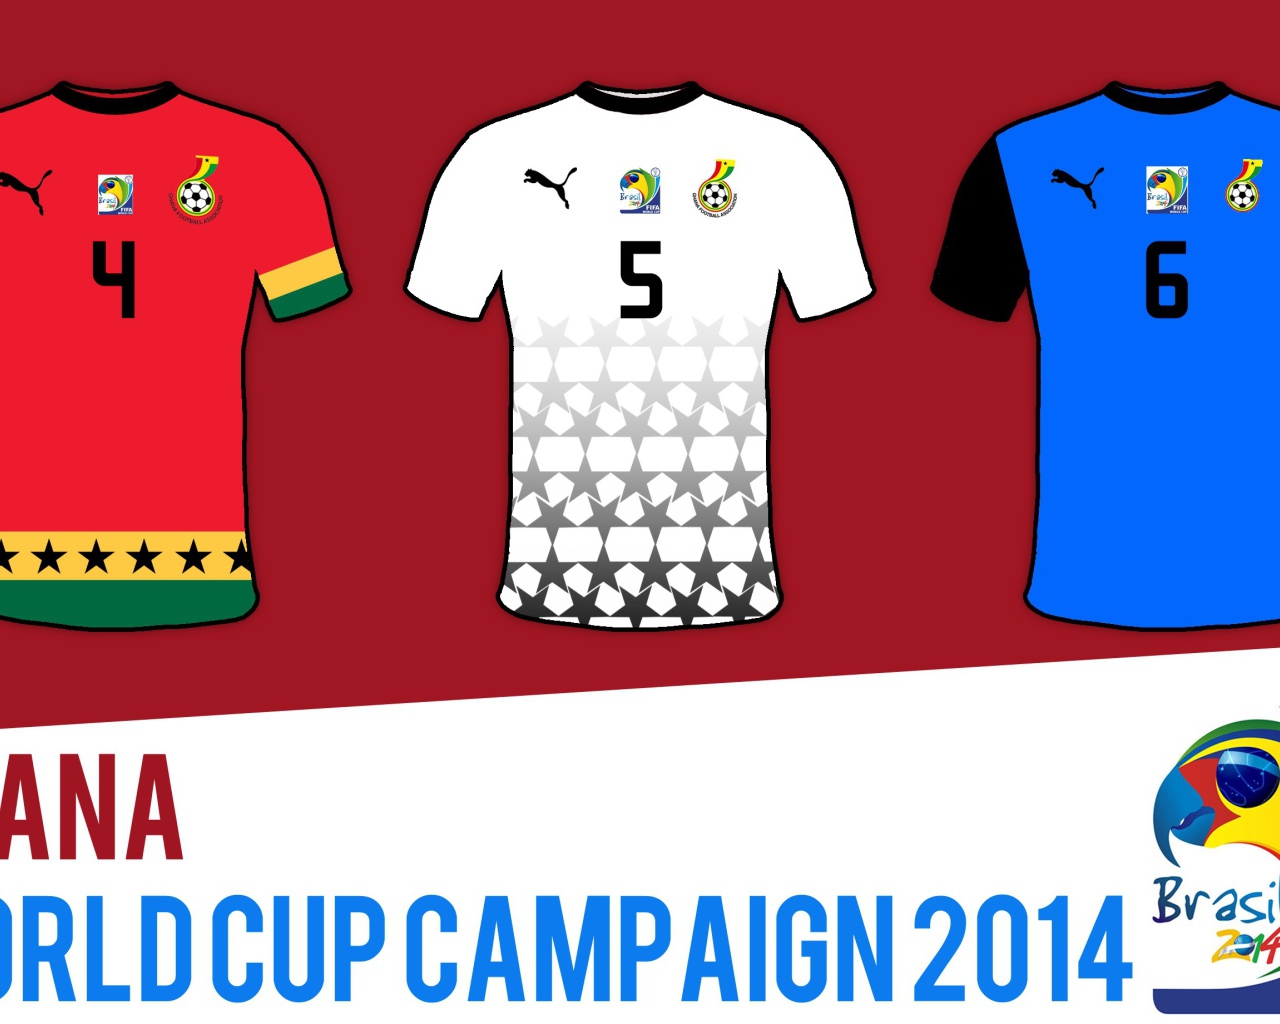 Форма сборной Ганы на Чемпионате мира по футболу в Бразилии 2014